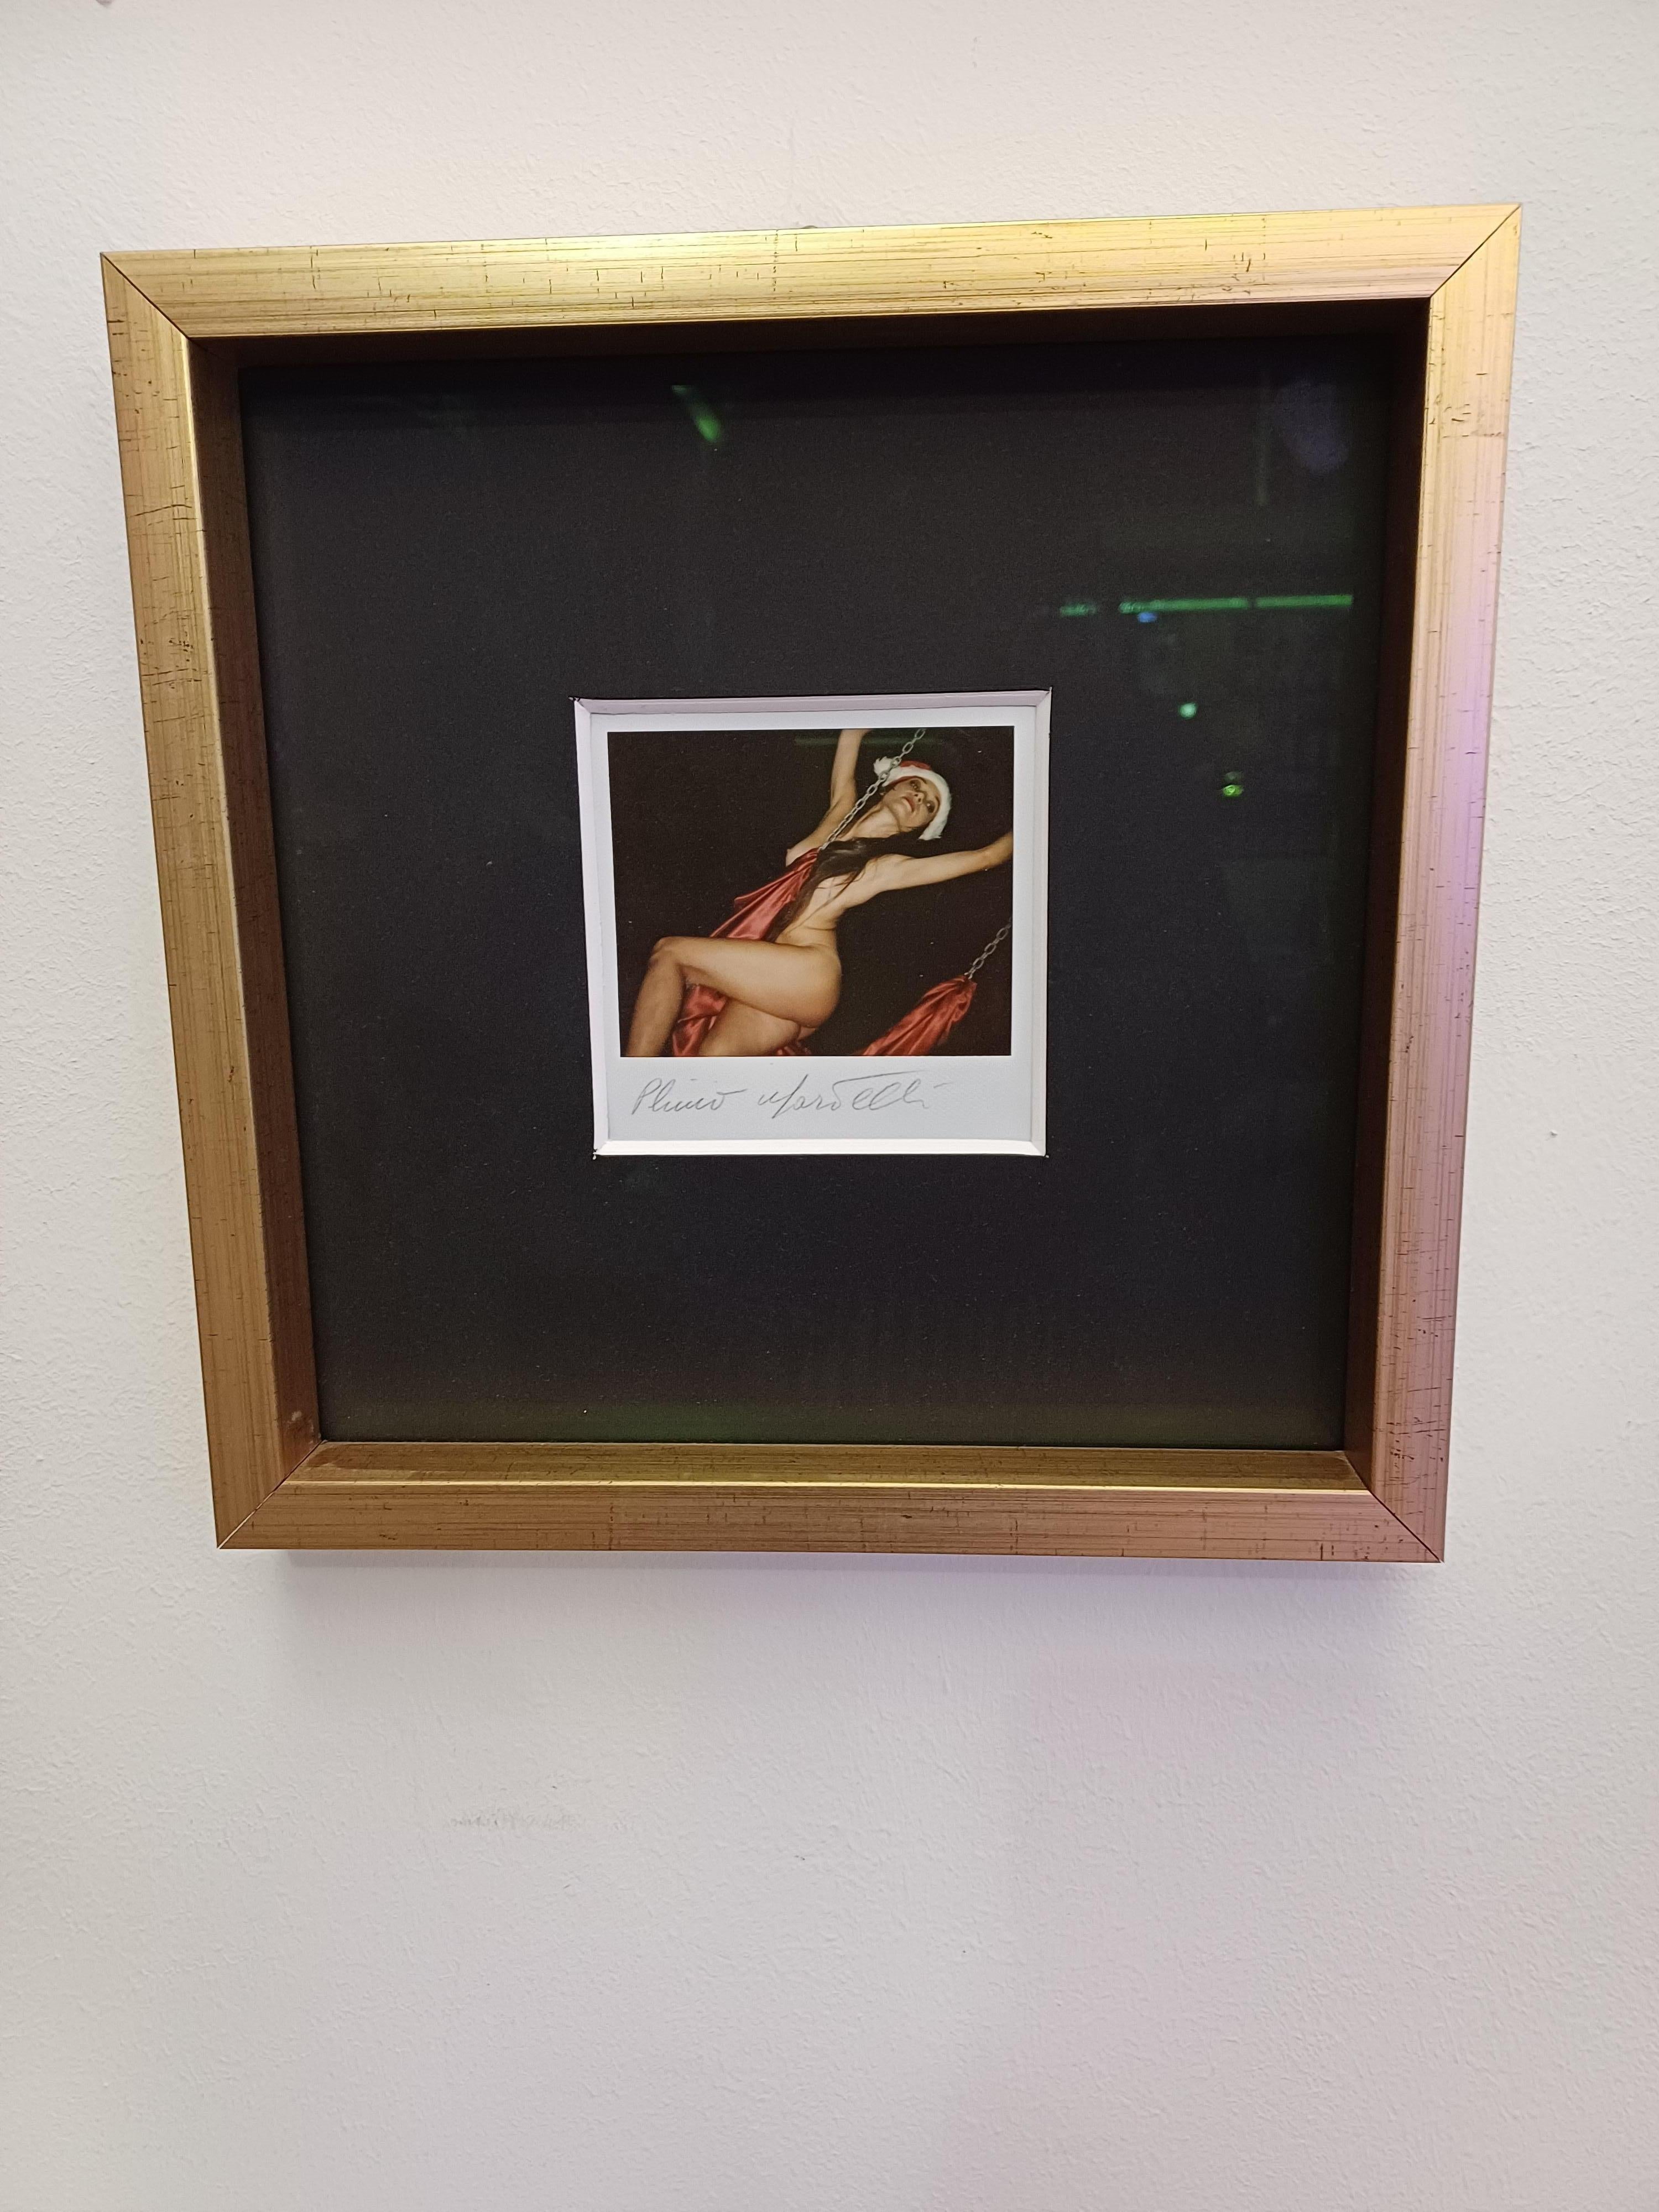 Polaroid signiert Plinio Martelli.
Polaroidformat 10 cm x 10 cm.
Bildgröße 27,5 cm x 27,5 cm
Plinio Martelli wurde 1945 in Turin geboren.  Nachdem er die Accademia Albertina besucht hatte, nahm er 1967 an der Fluxus-Veranstaltung teil, an der auch